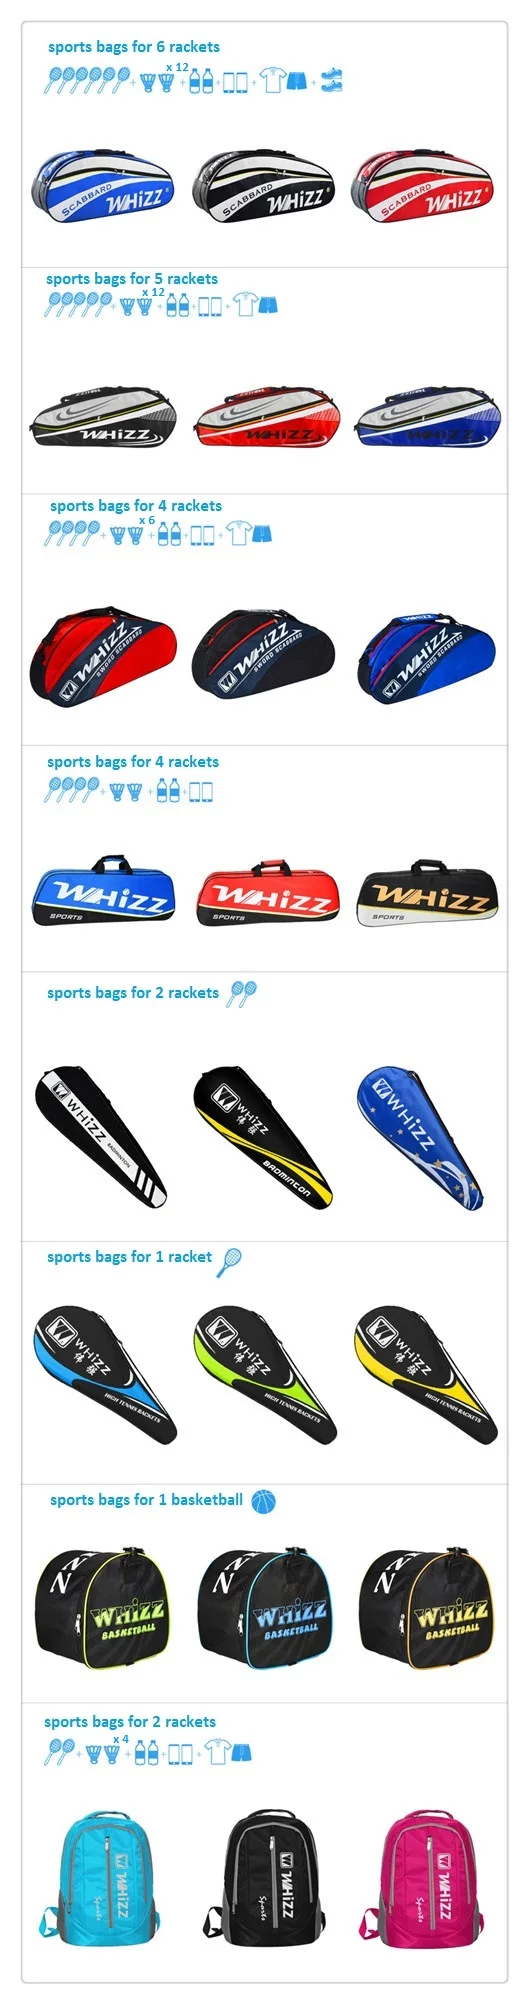 racket bags_